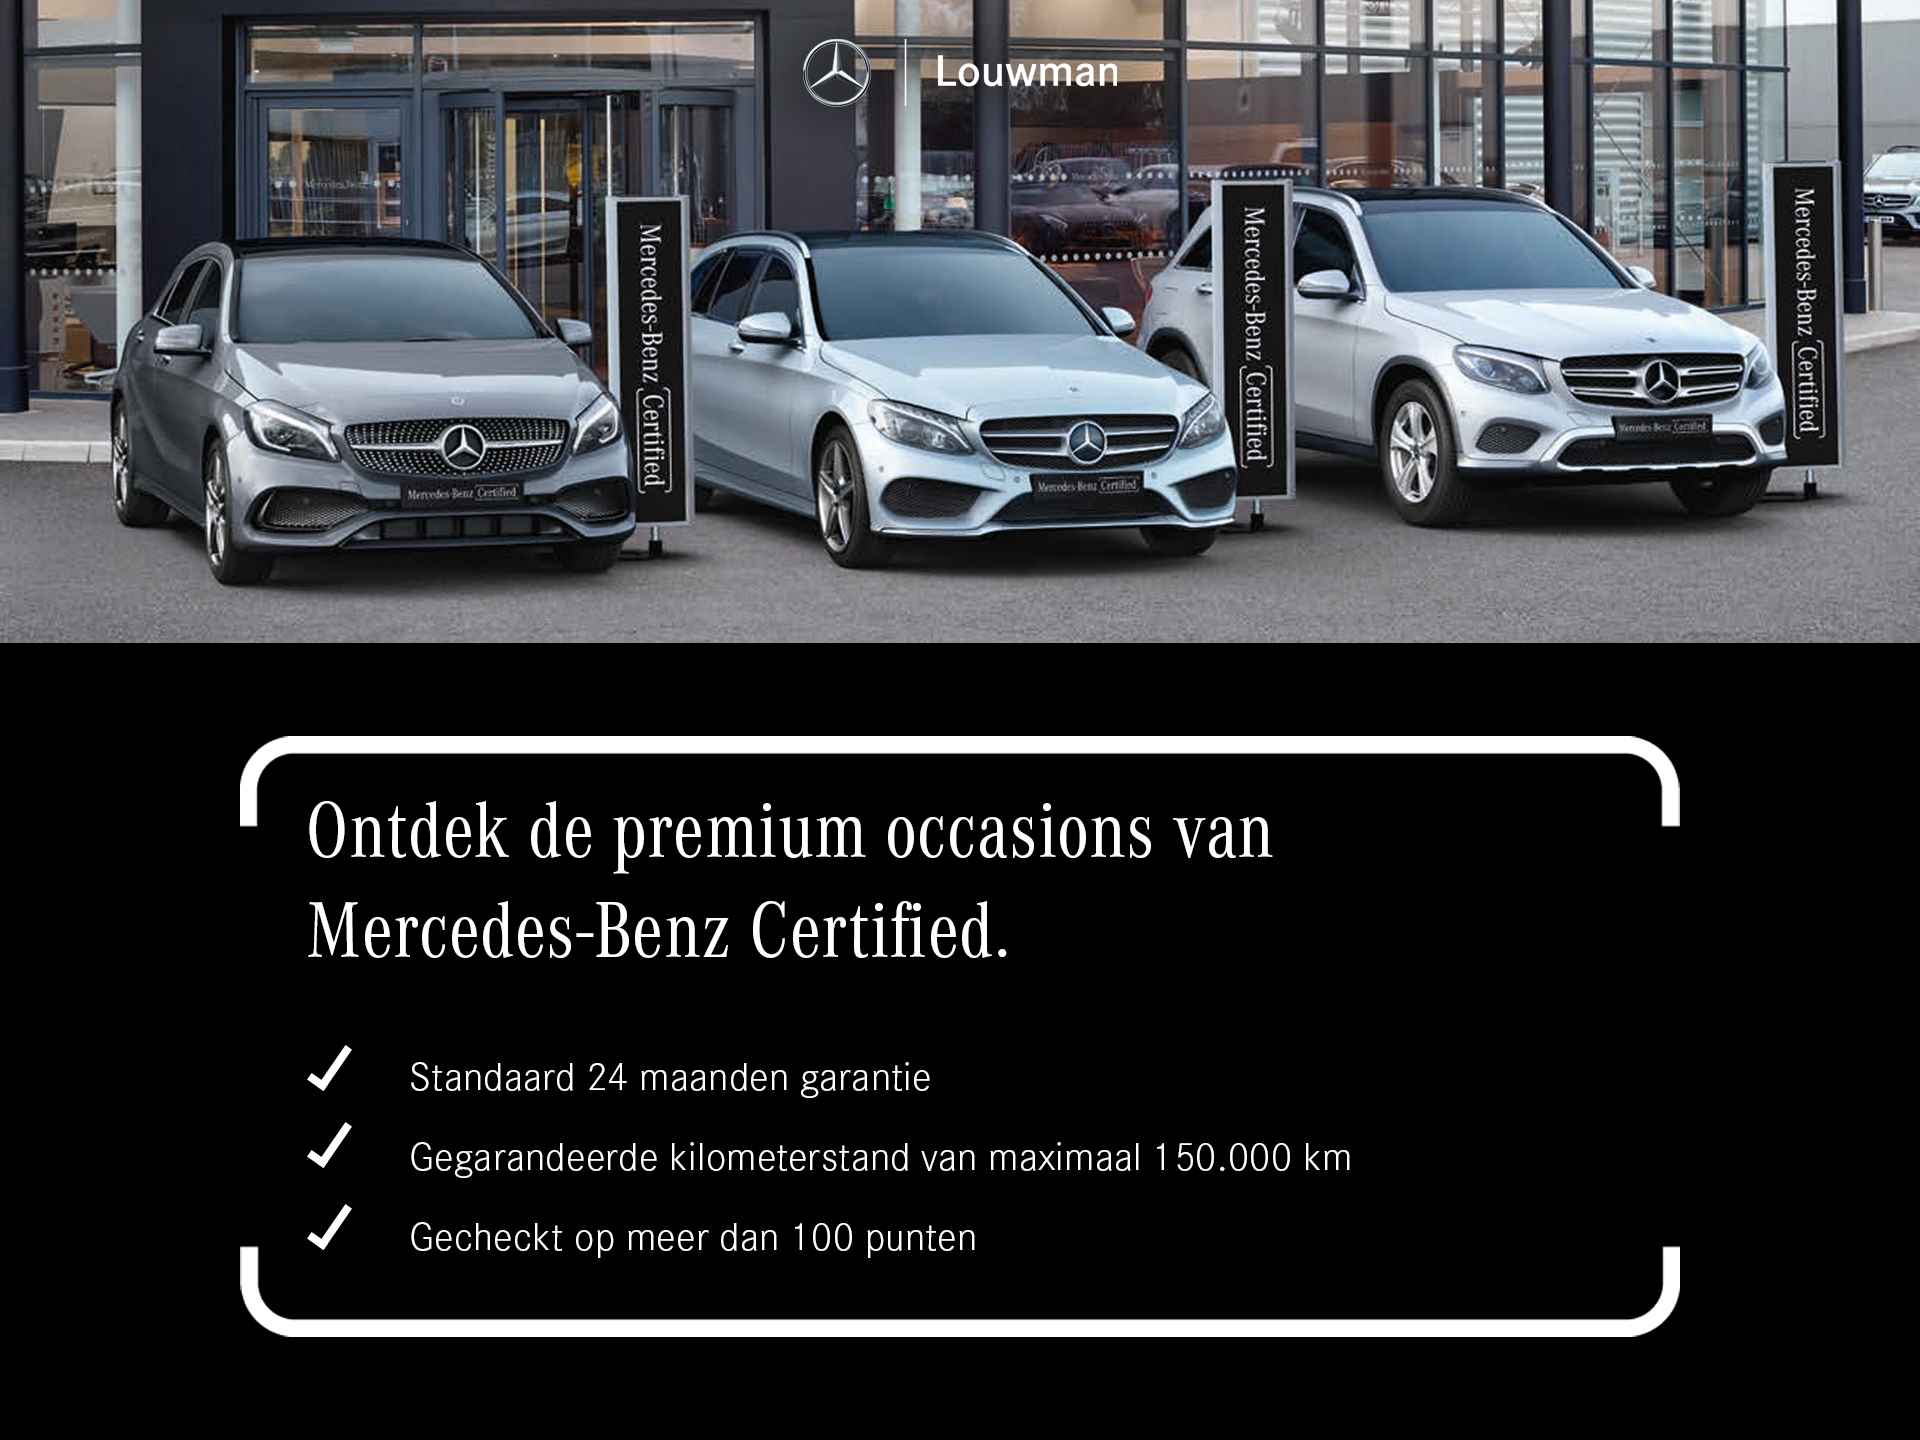 Mercedes-Benz A-Klasse 180 AMG | 5 spaaks lichtmetalenvelgen | MBUX wide screen | Navigatie | Camera | parking support | Inclusief 24 maanden Mercedes-Benz Certified garantie voor Europa. - 42/43